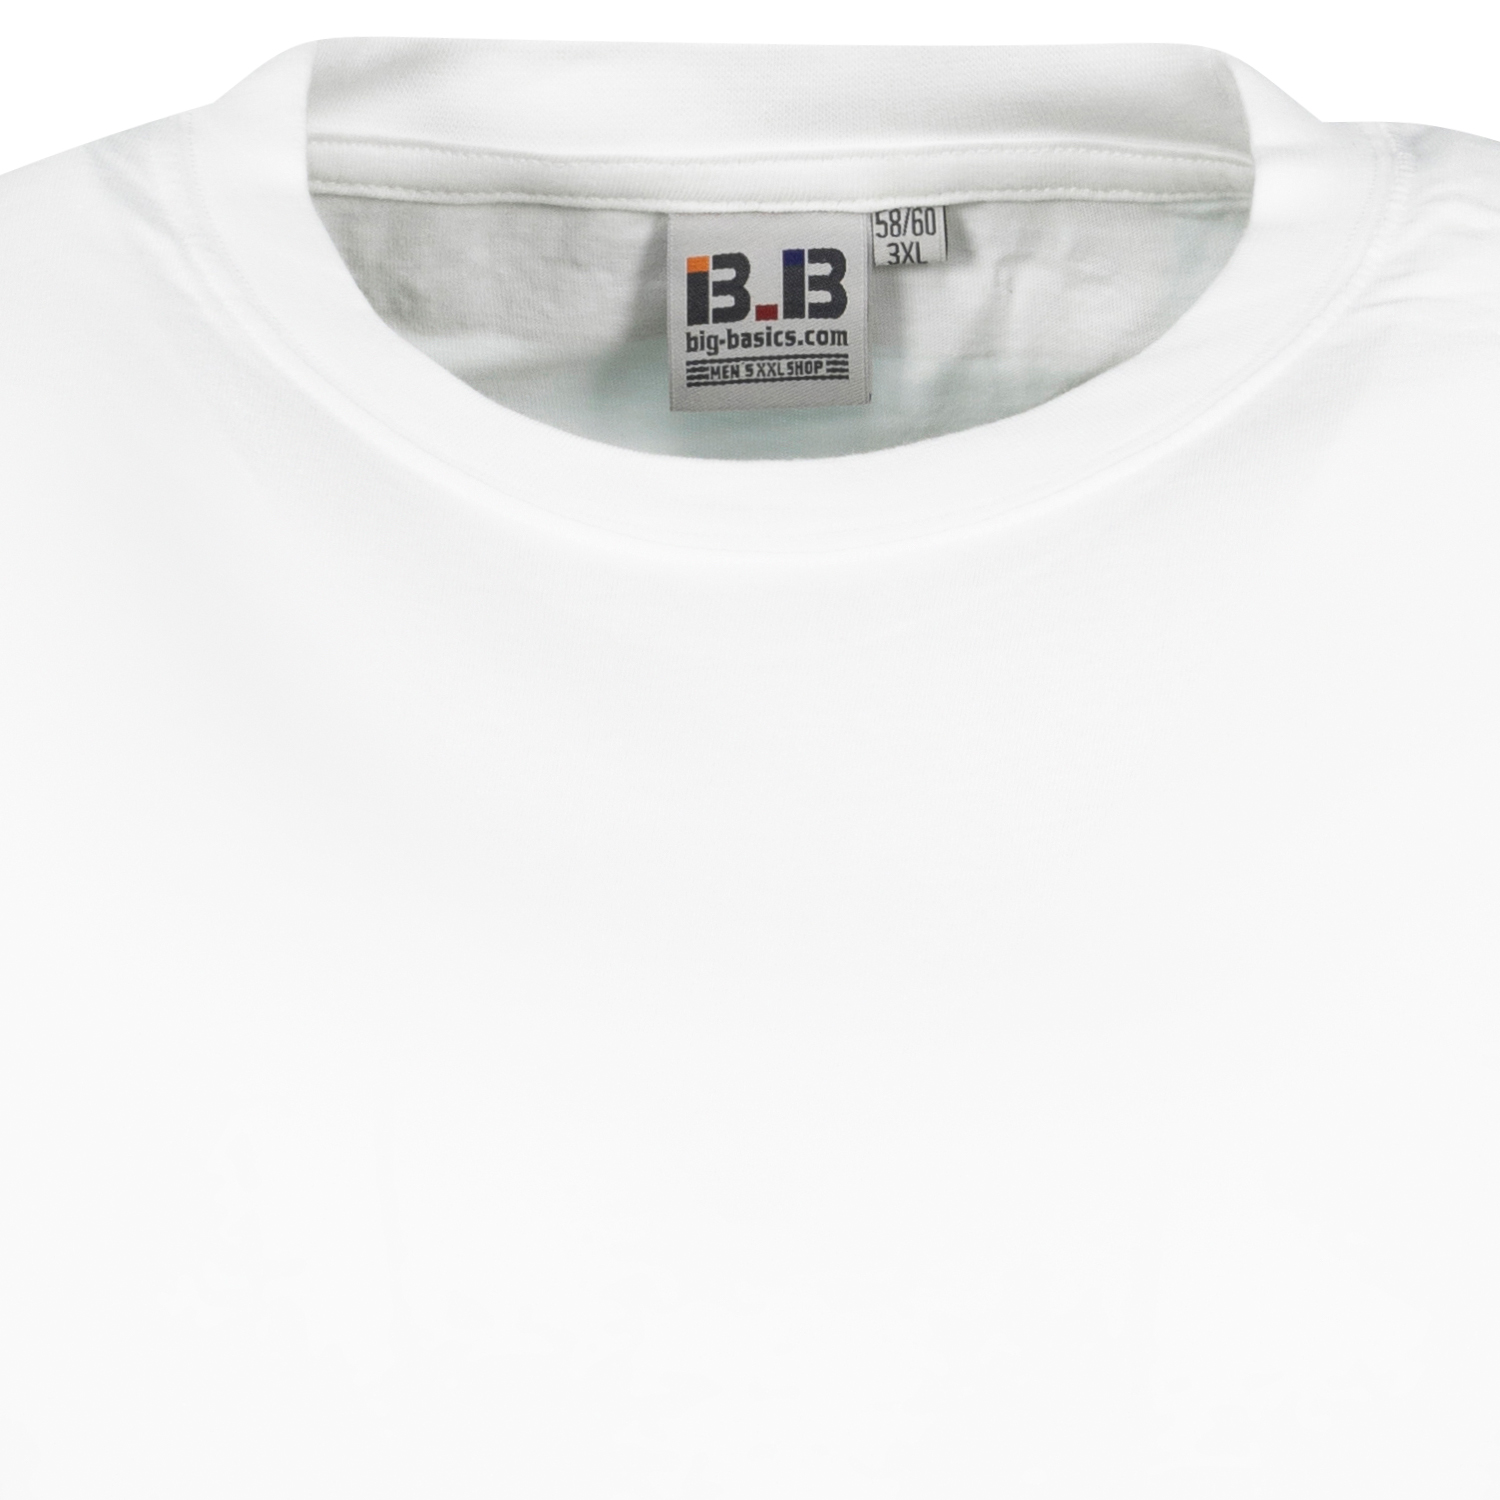 Weißes T-Shirt im Doppelpack von Big Basics in Übergrößen bis 8XL